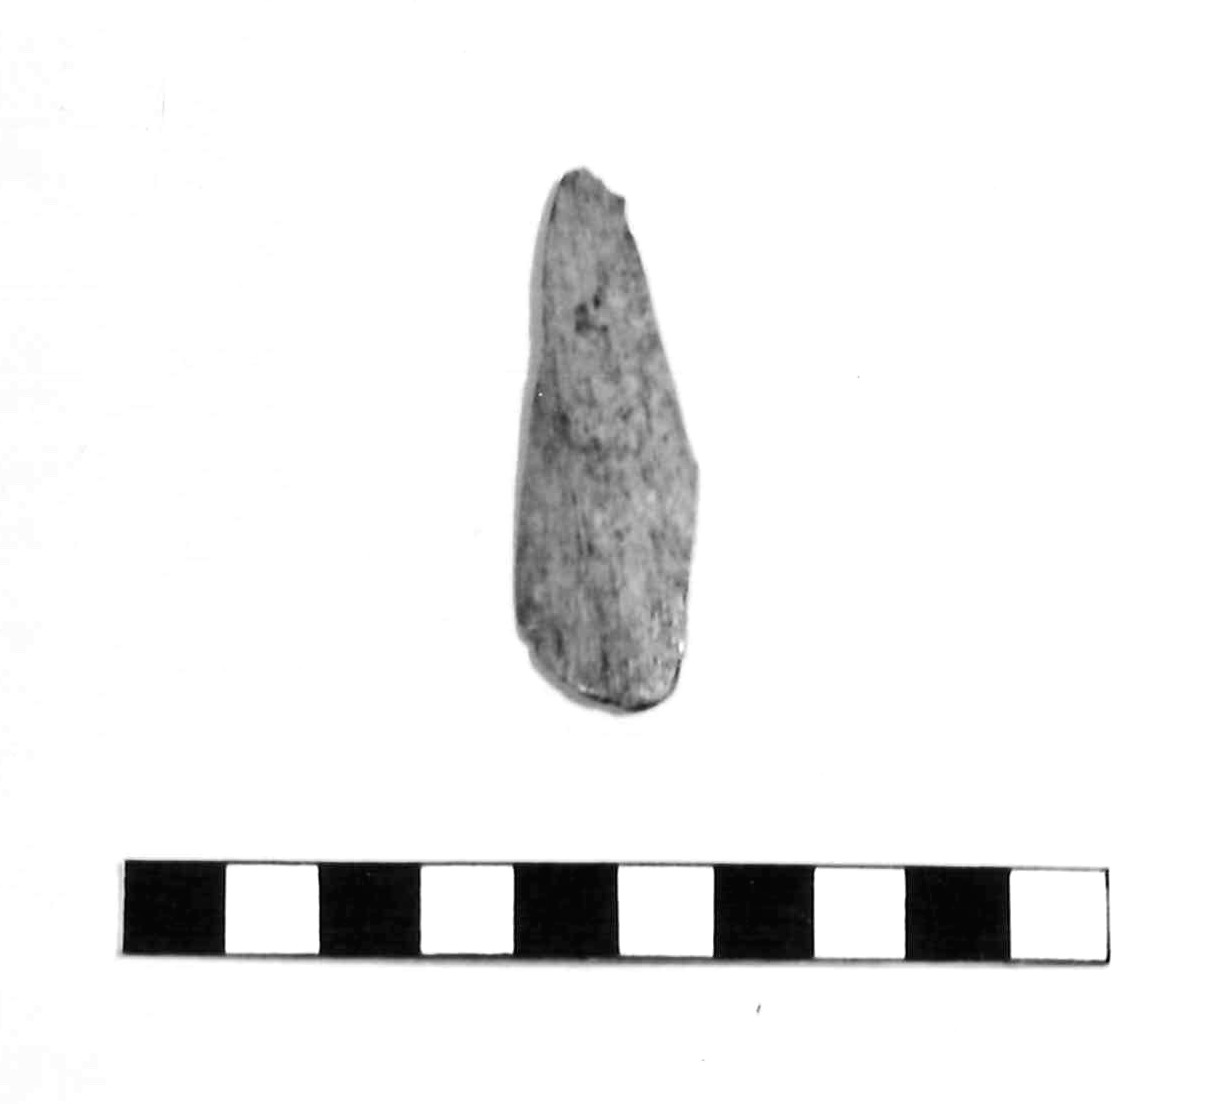 spatola - subappenninico (età del bronzo recente)